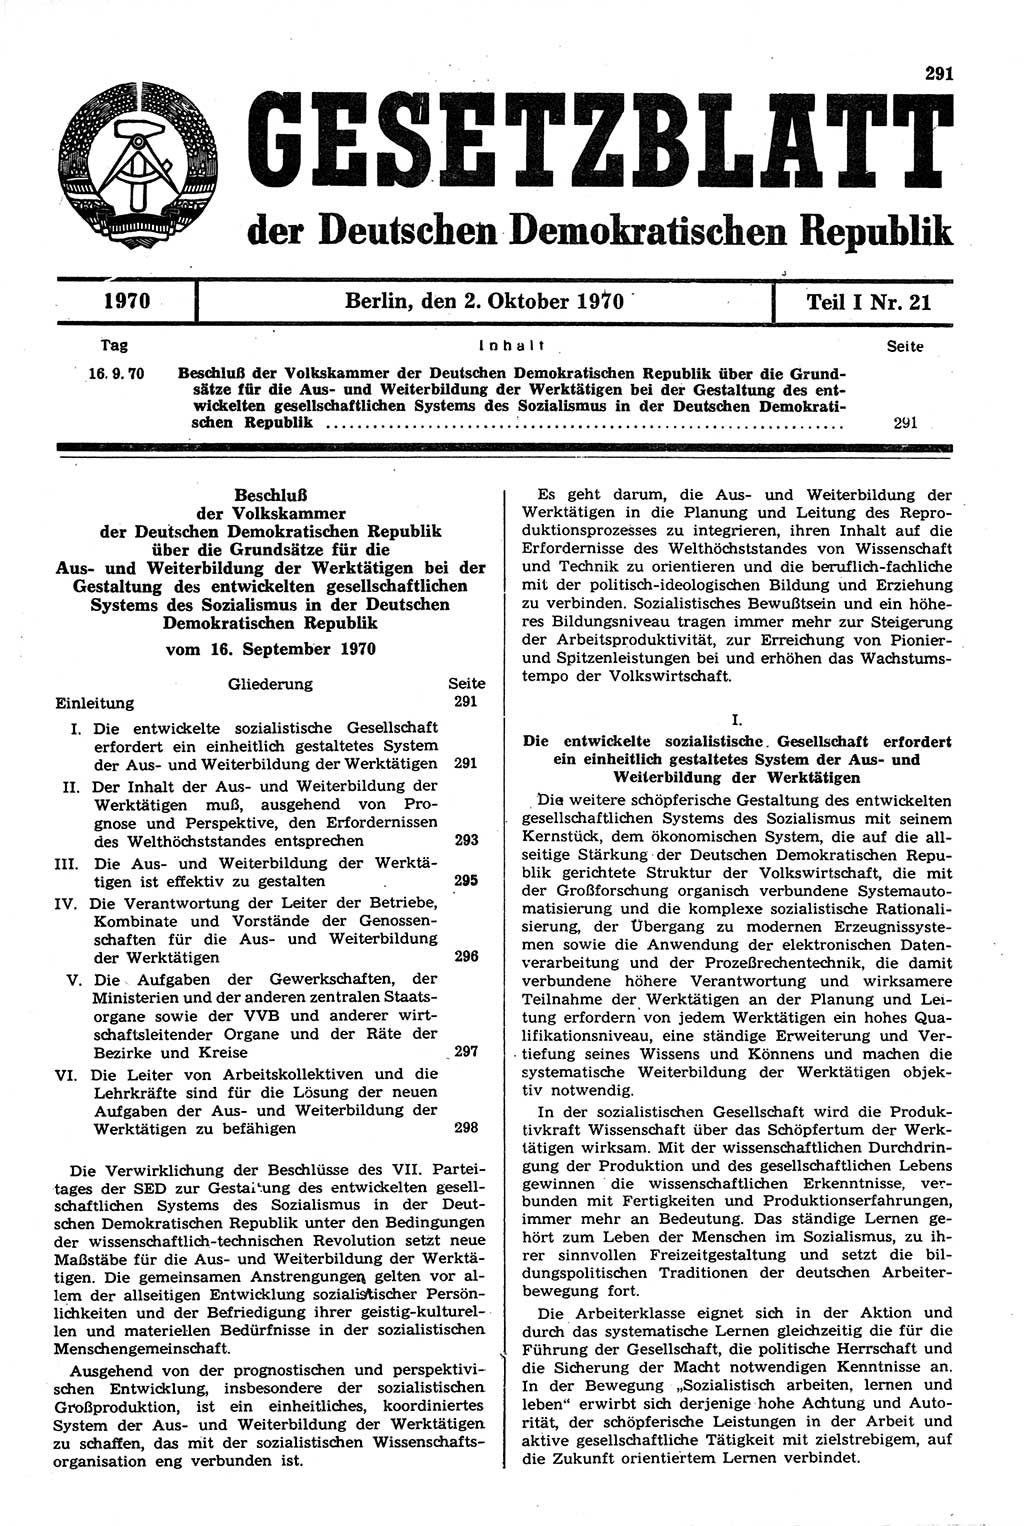 Gesetzblatt (GBl.) der Deutschen Demokratischen Republik (DDR) Teil Ⅰ 1970, Seite 291 (GBl. DDR Ⅰ 1970, S. 291)